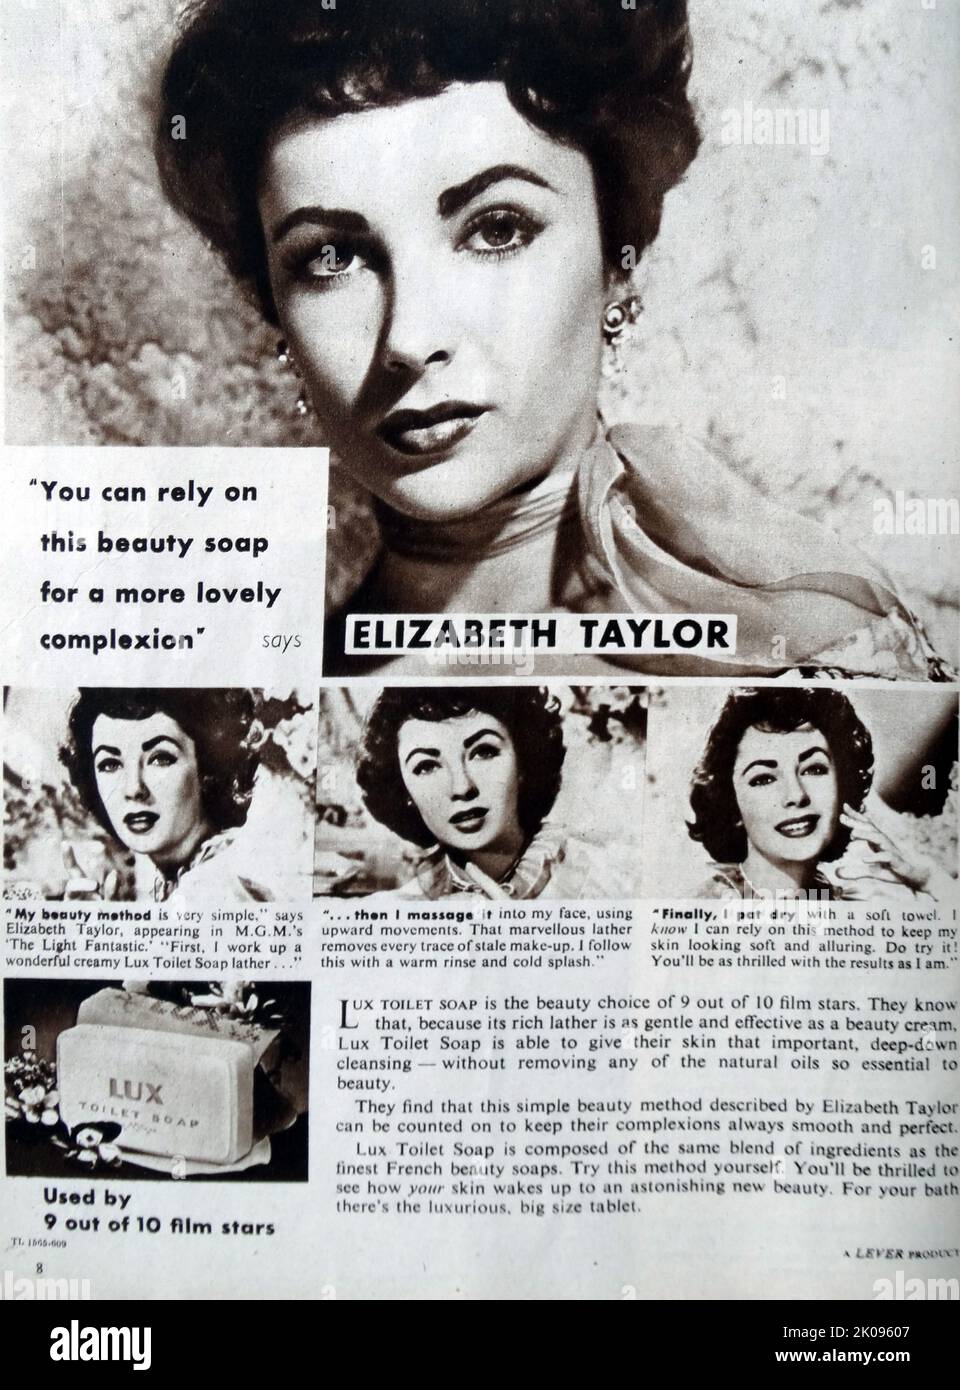 Elizabeth Taylor. Dame Elizabeth Rosemond Taylor DBE (27. Februar 1932 - 23. März 2011) war eine britisch-amerikanische Schauspielerin. Sie begann ihre Karriere als Kinderdarstellerin Anfang 1940s und war 1950s einer der beliebtesten Stars des klassischen Hollywood-Kinos. Dann wurde sie in den Jahren 1960s zum höchstbezahlten Filmstar und blieb für den Rest ihres Lebens eine bekannte Persönlichkeit in der Öffentlichkeit. Stockfoto